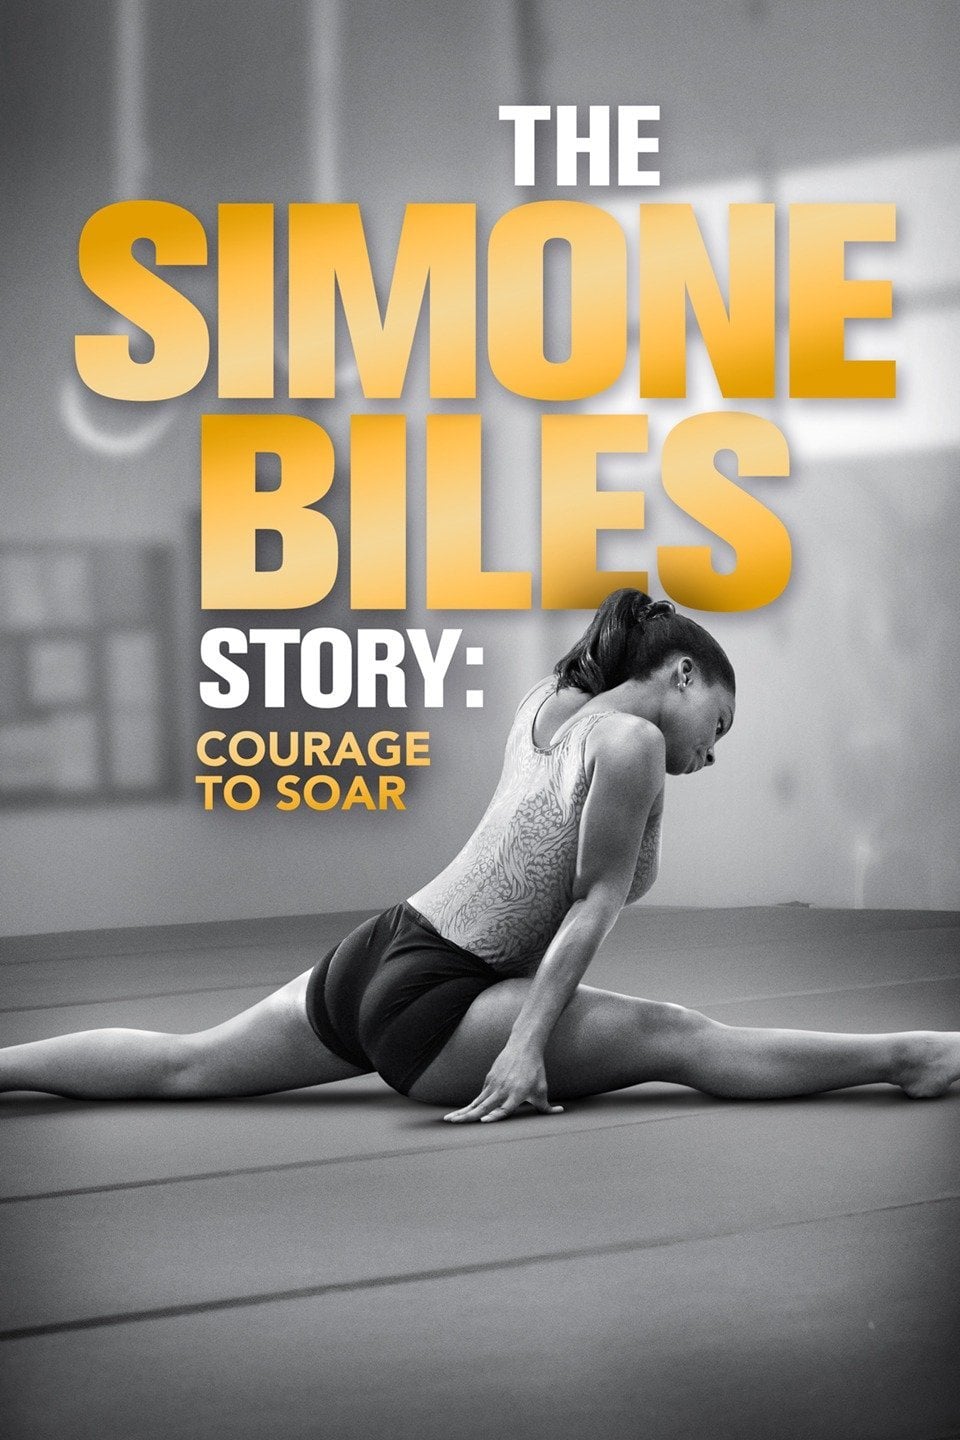 Simone Biles : Les sacrifices d'une championne